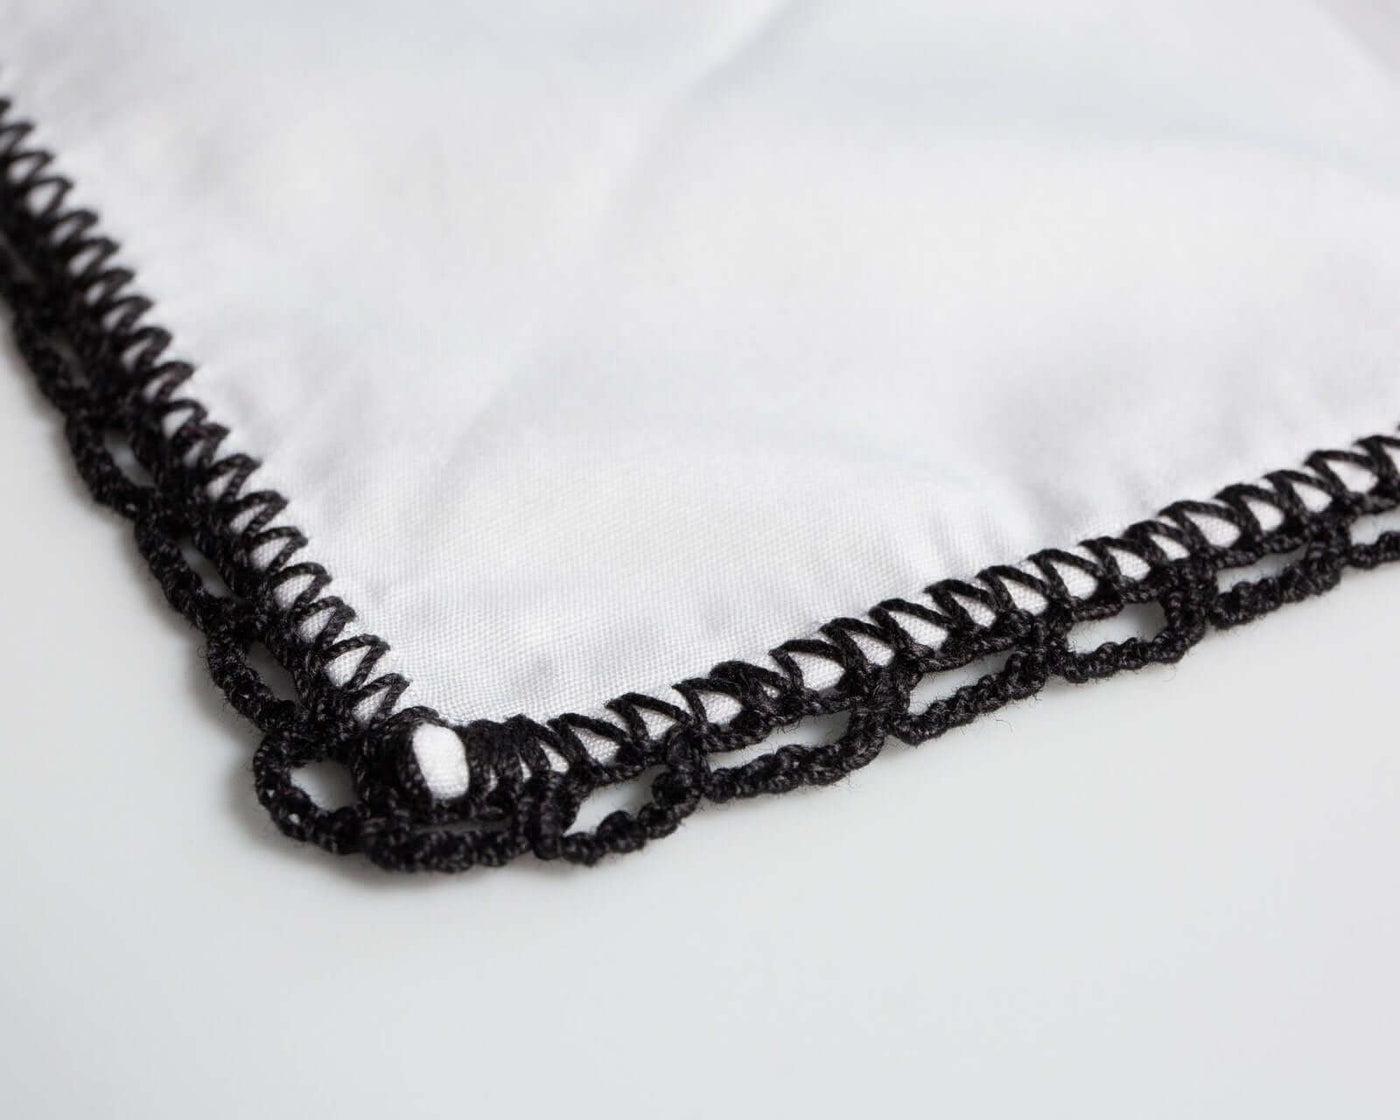 -Einstecktuch Crochet Black - Herr von Welt - Calabrese 1924